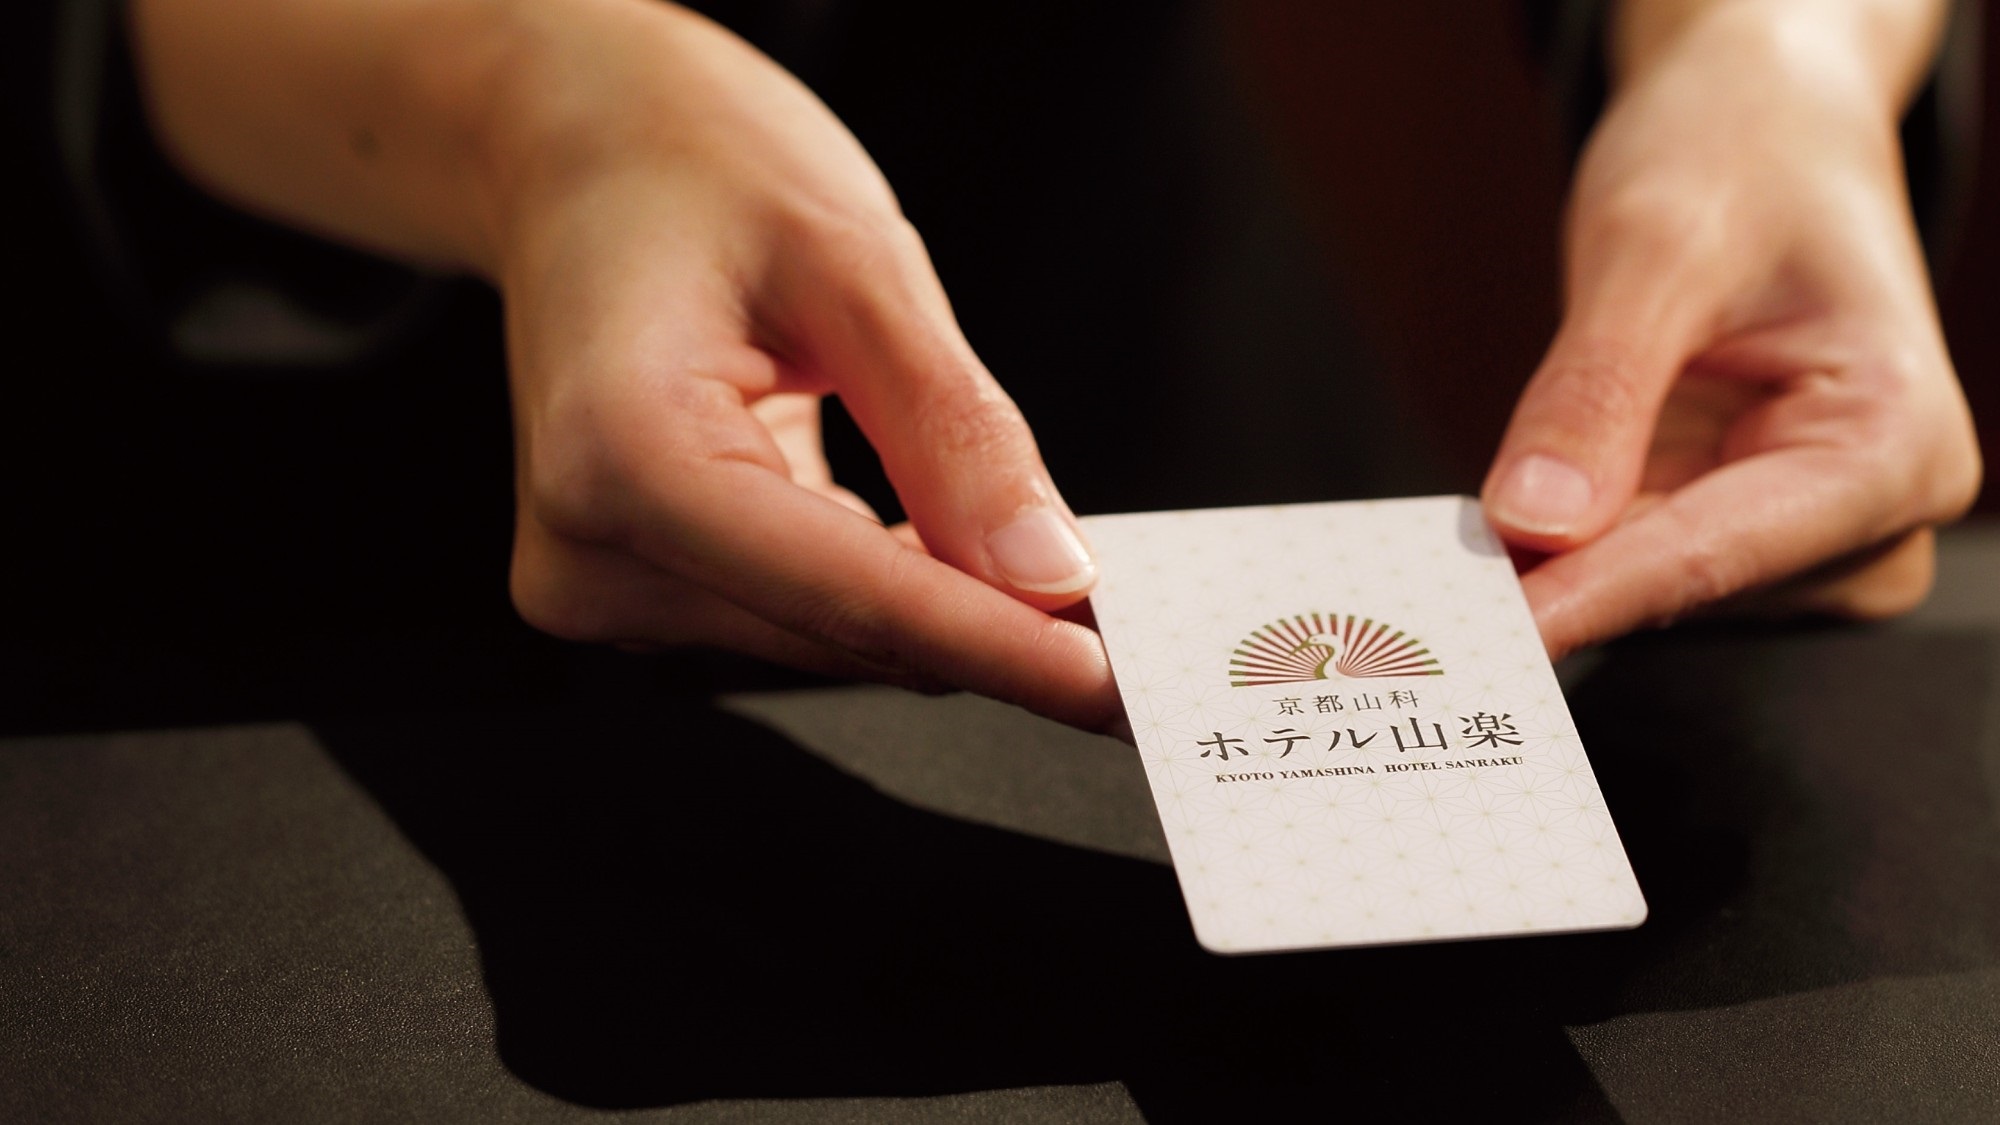  【ルームキー】当ホテルのロゴを写したオリジナルカードキー